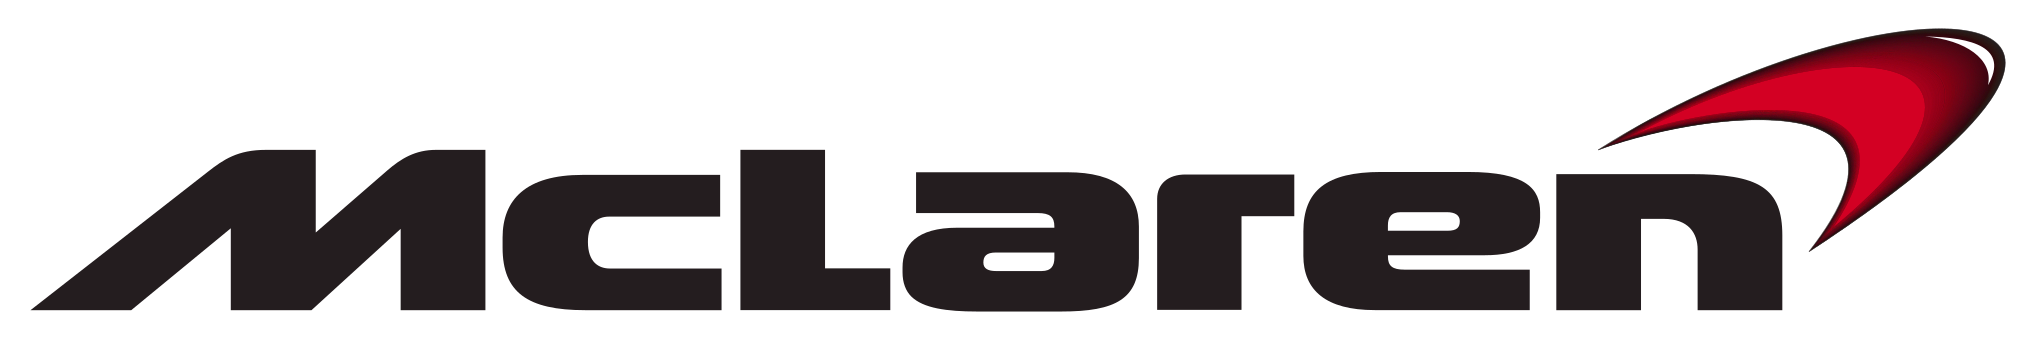 McLaren-logo-e1611076126664